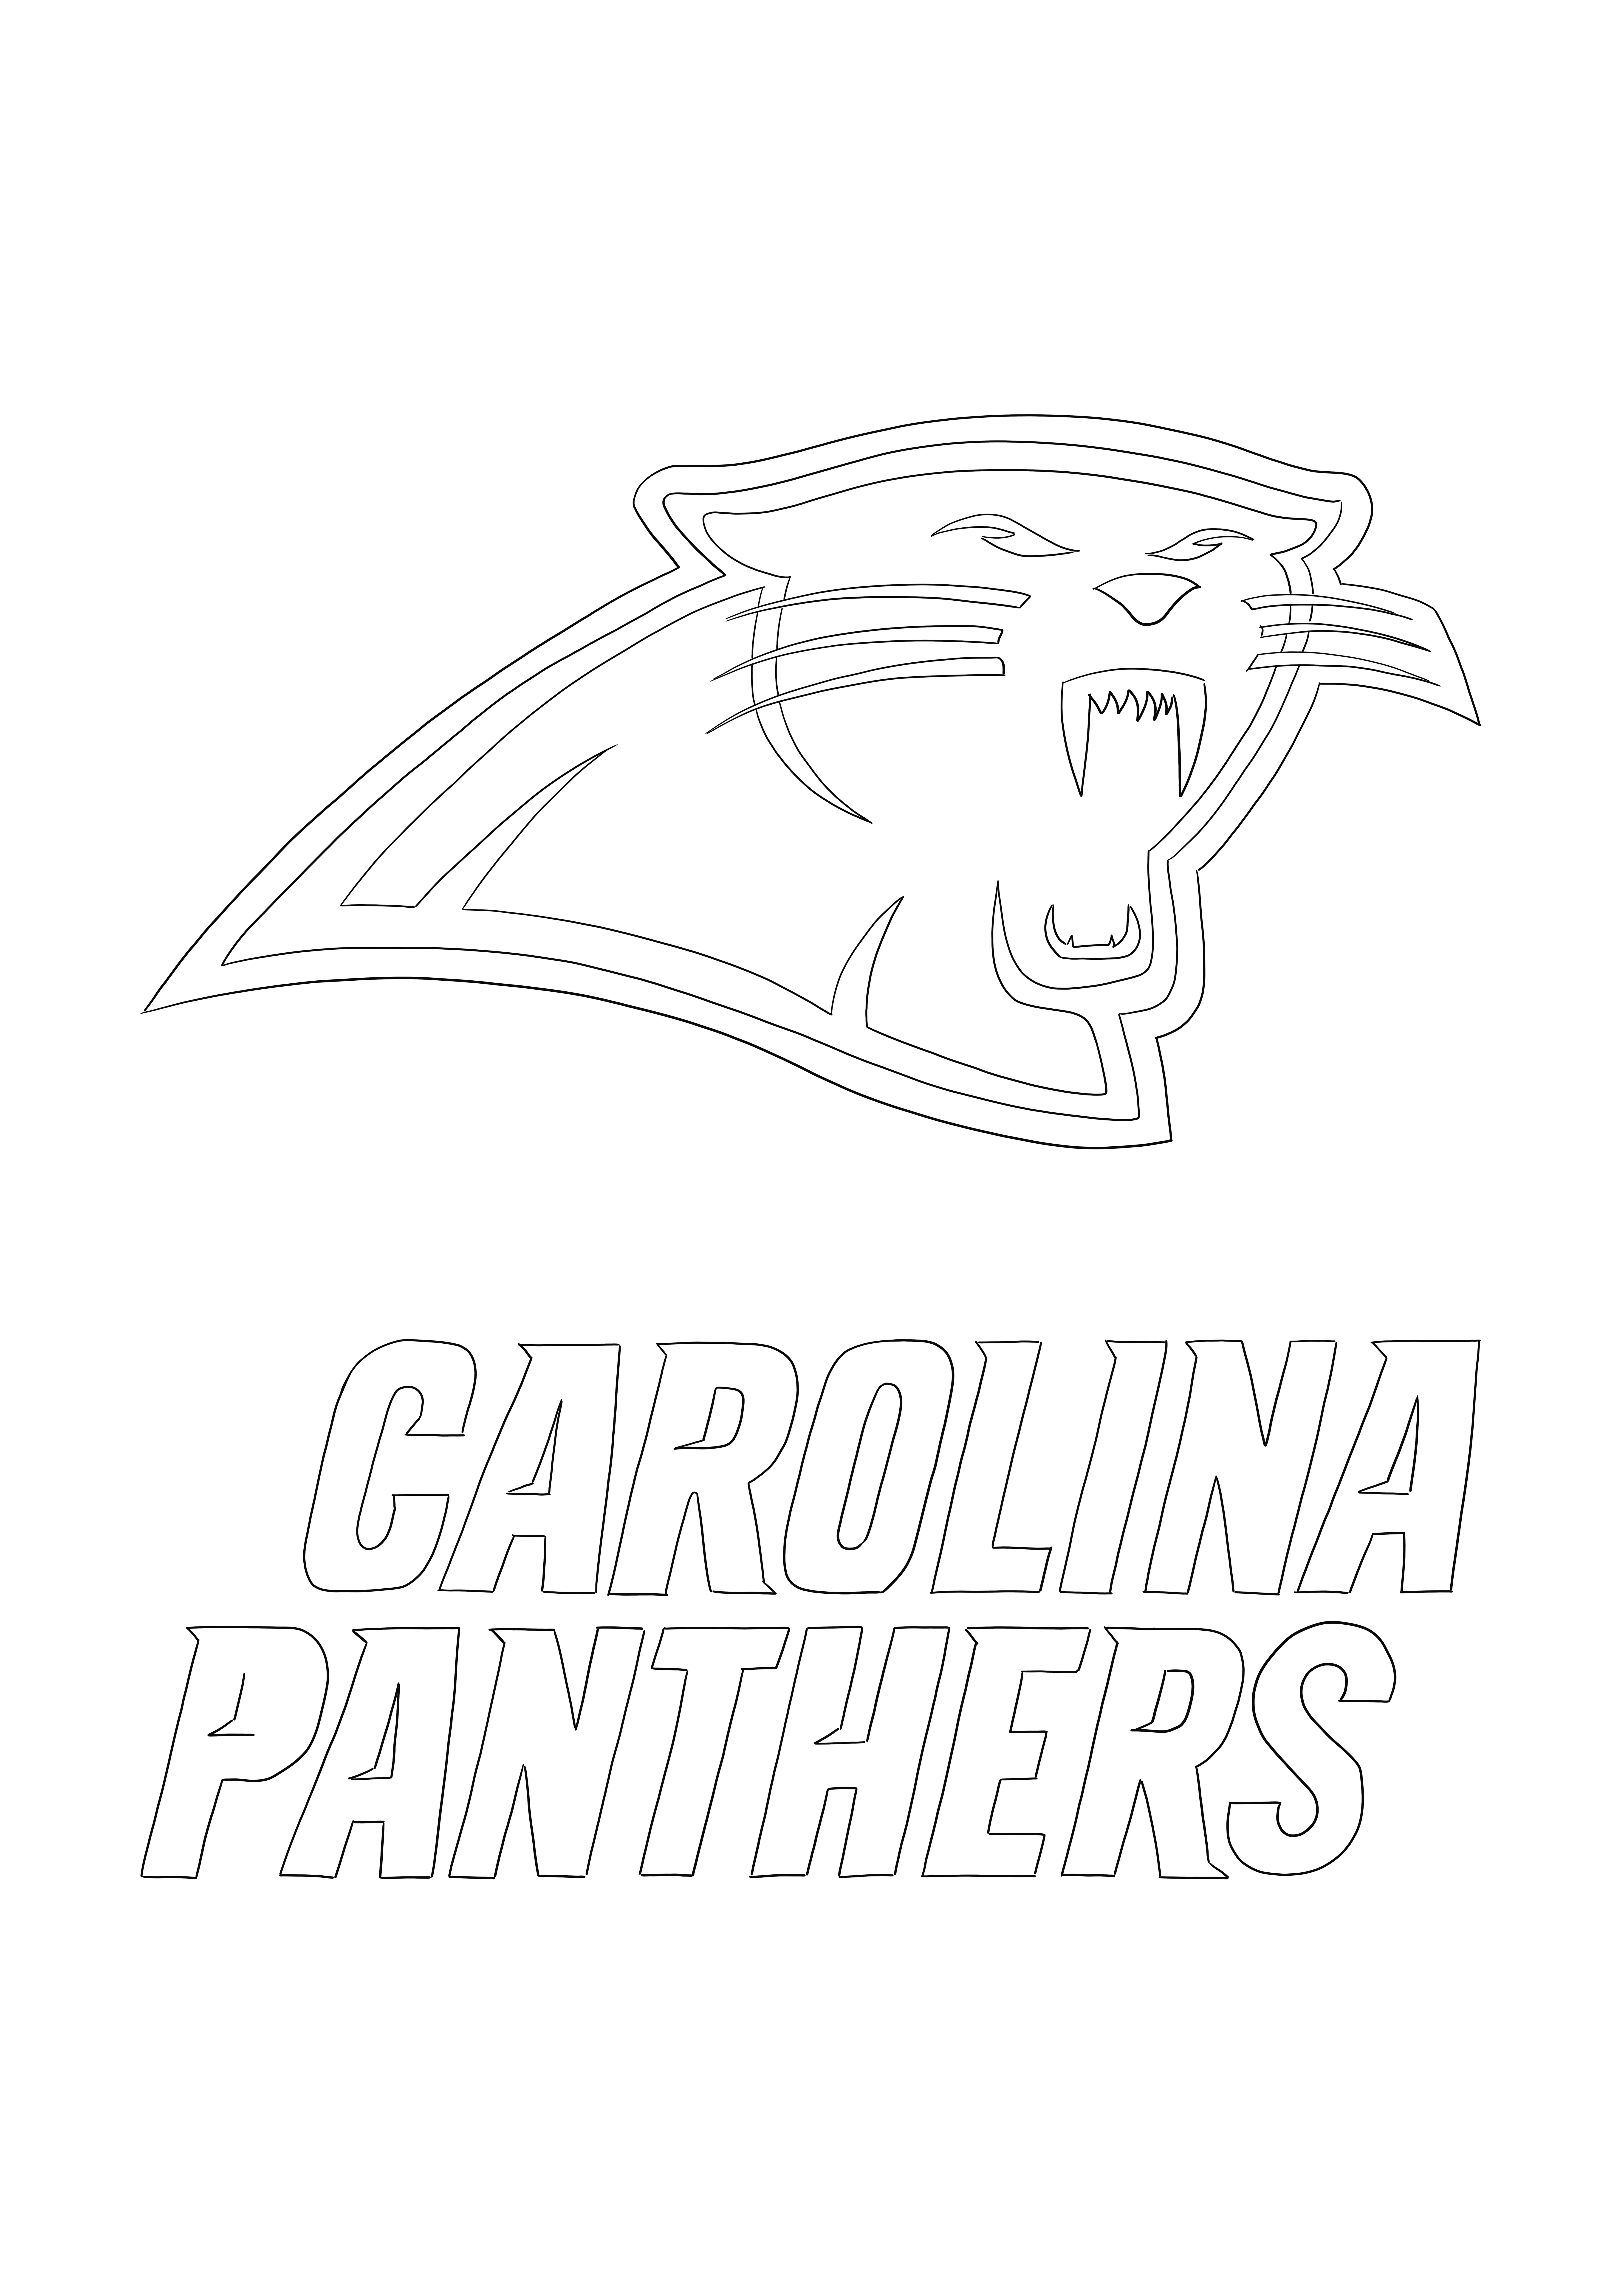 Logo des Panthers de la Caroline imprimable gratuitement à colorier pour tous ceux qui aiment la NFL